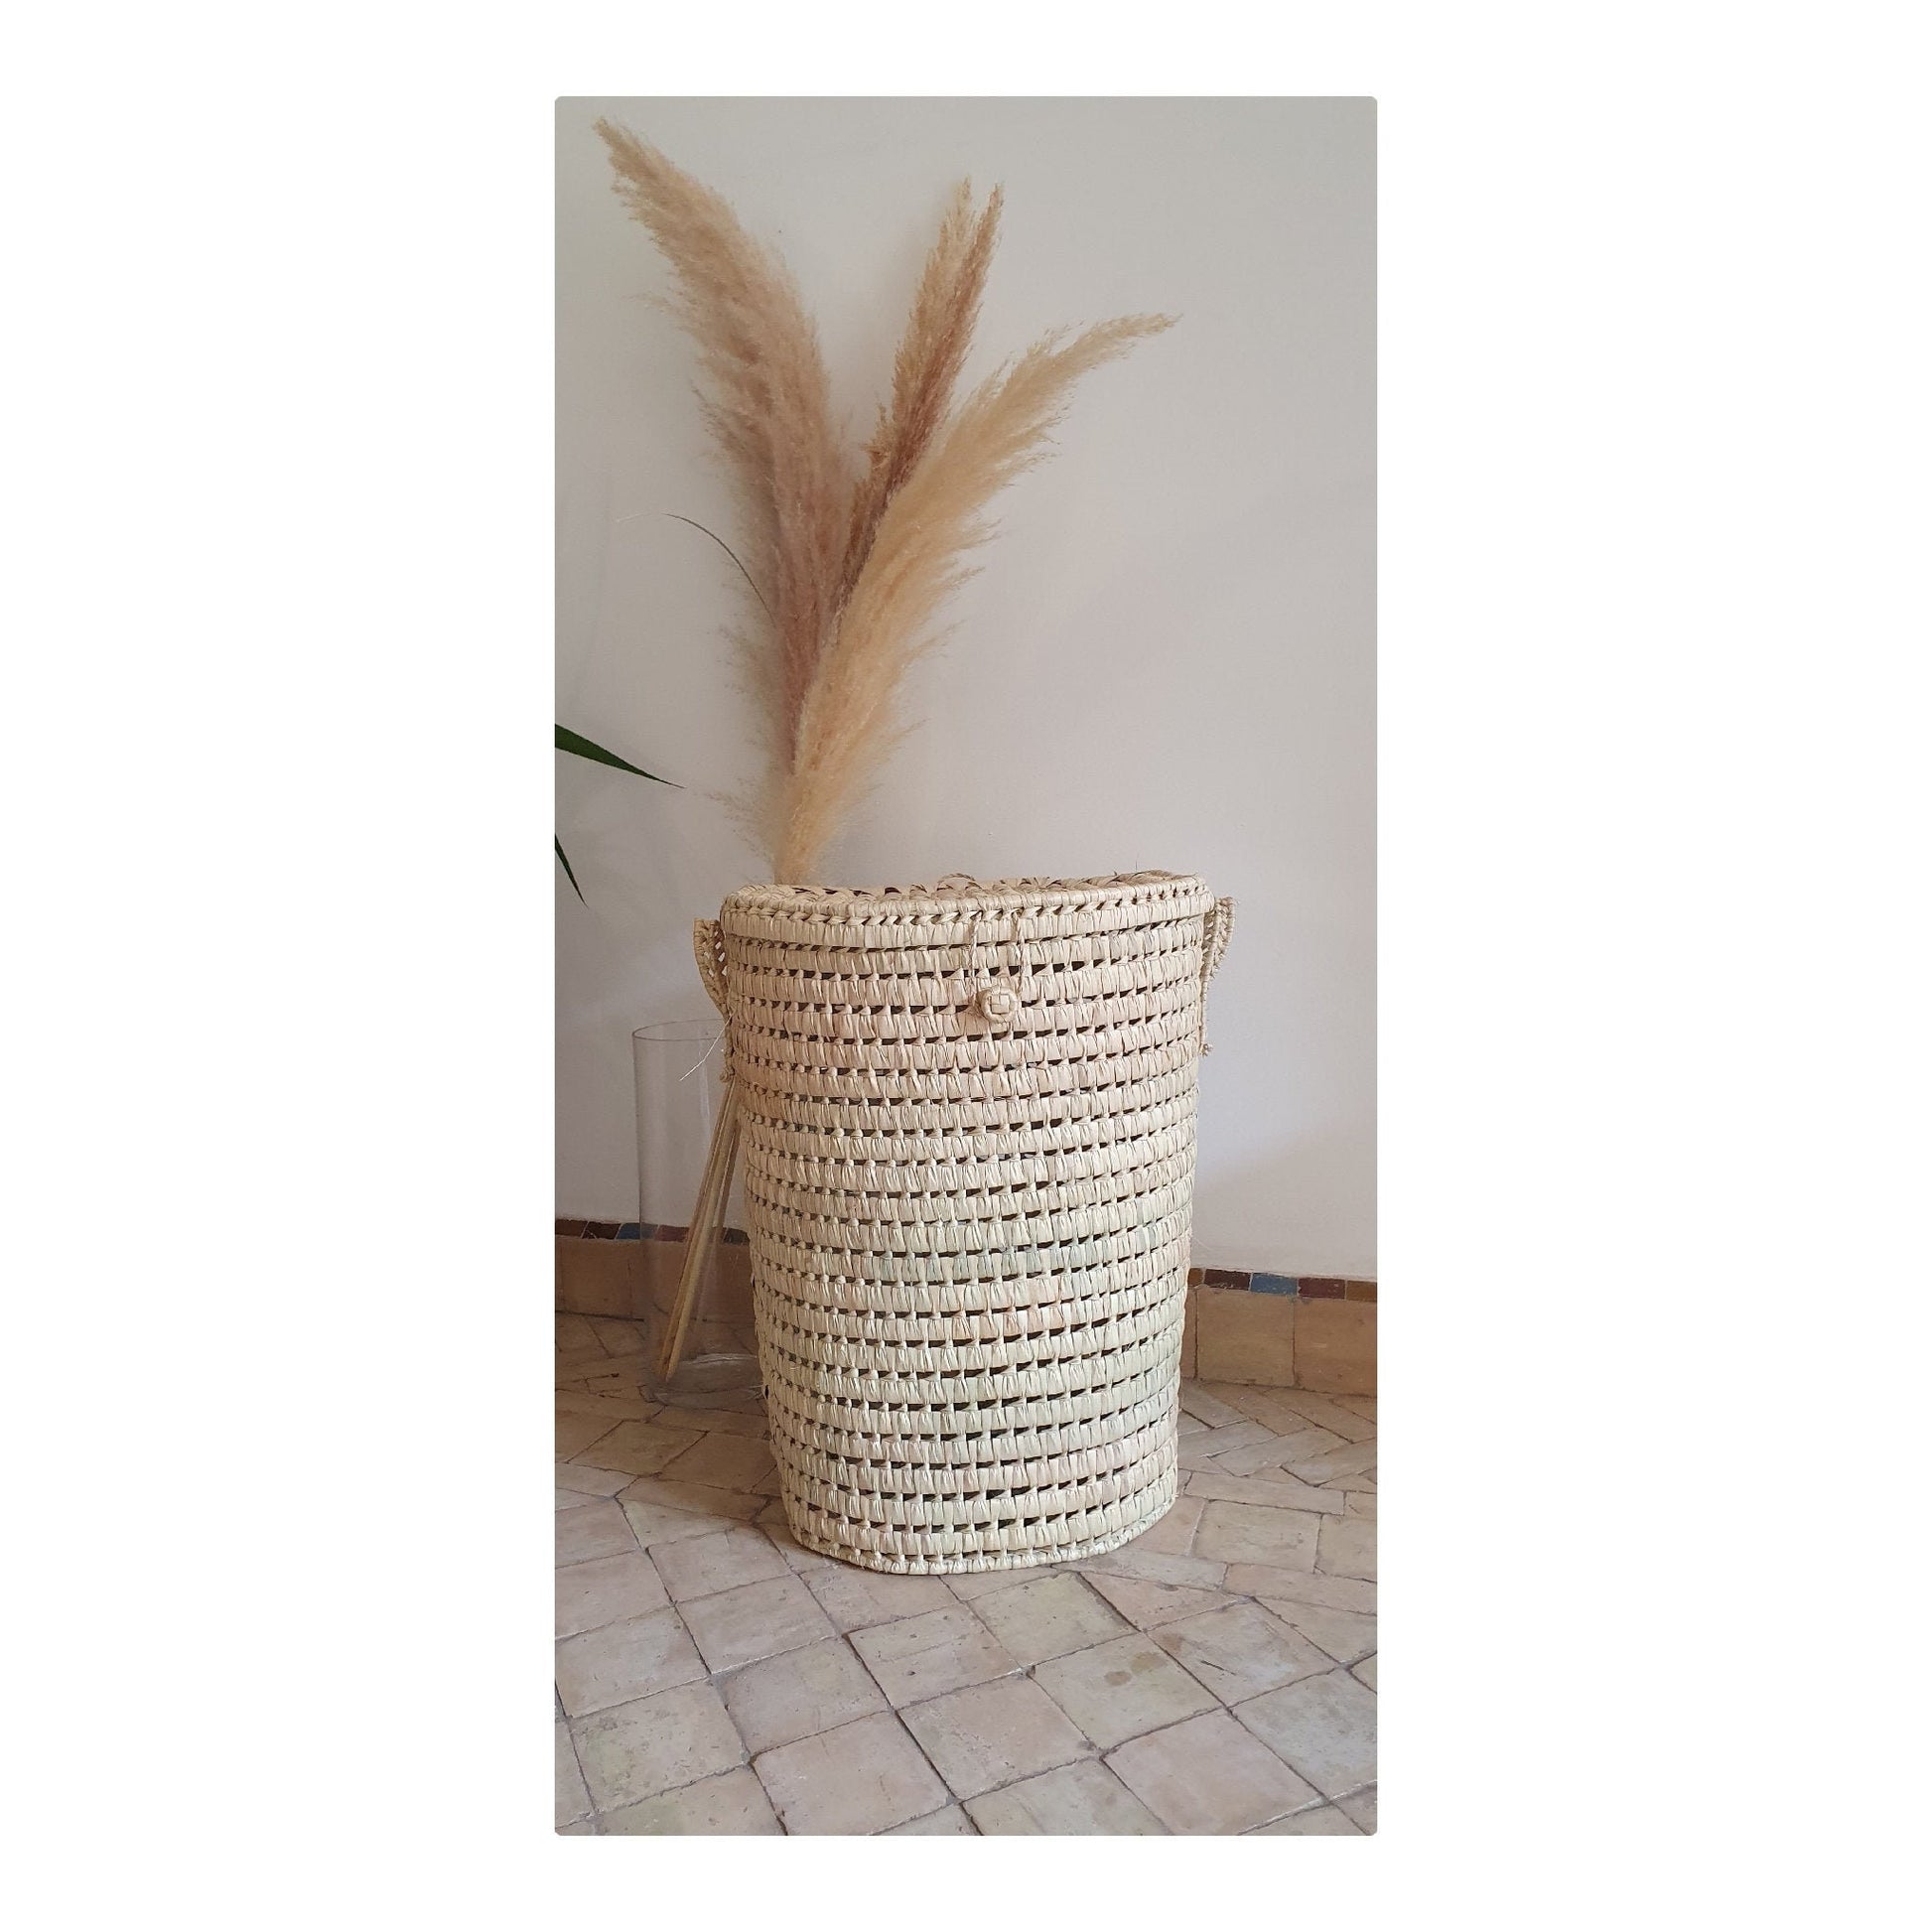 Un panier de rangement rond en feuilles de palmier, ajoutant une touche d'élégance naturelle à la décoration intérieure.